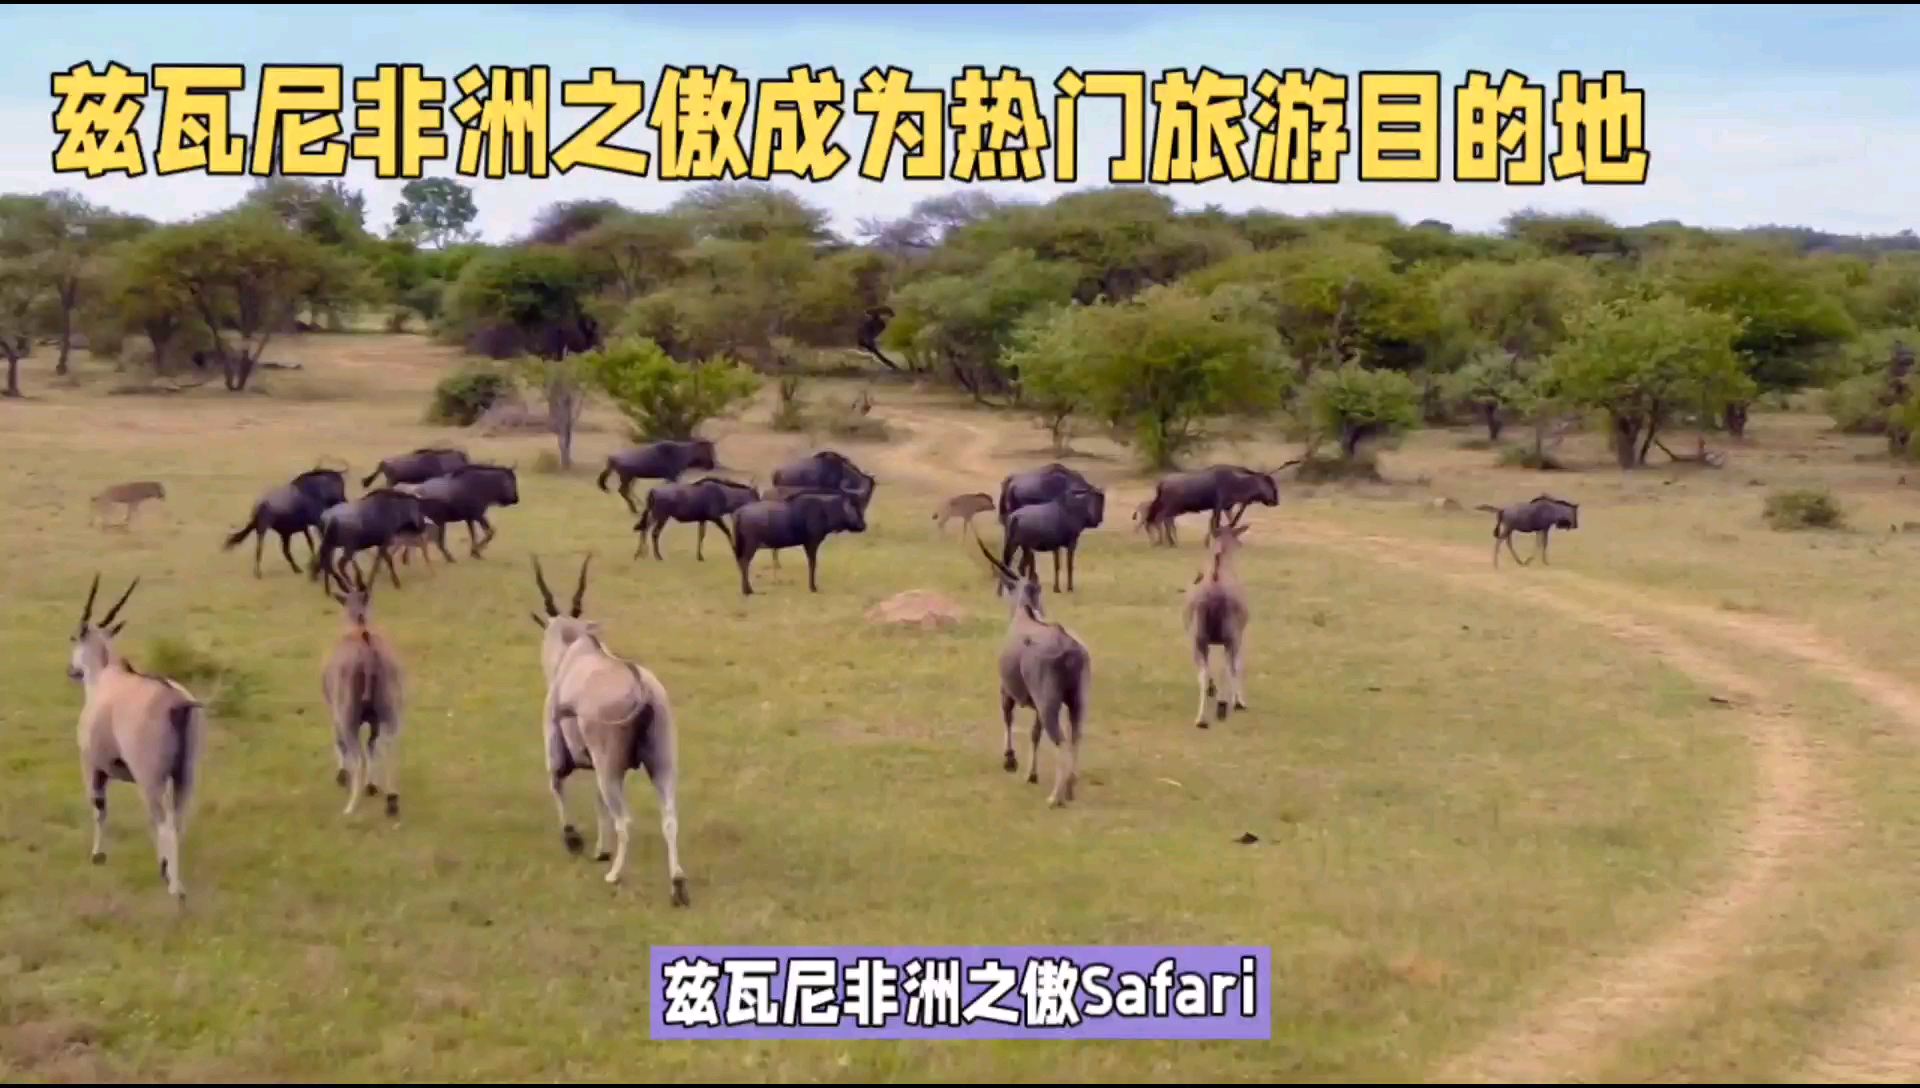 兹瓦尼非洲之傲（Safari Africa）是指非洲大陆上的野生动物保护区和国家公园，这些地区通常拥